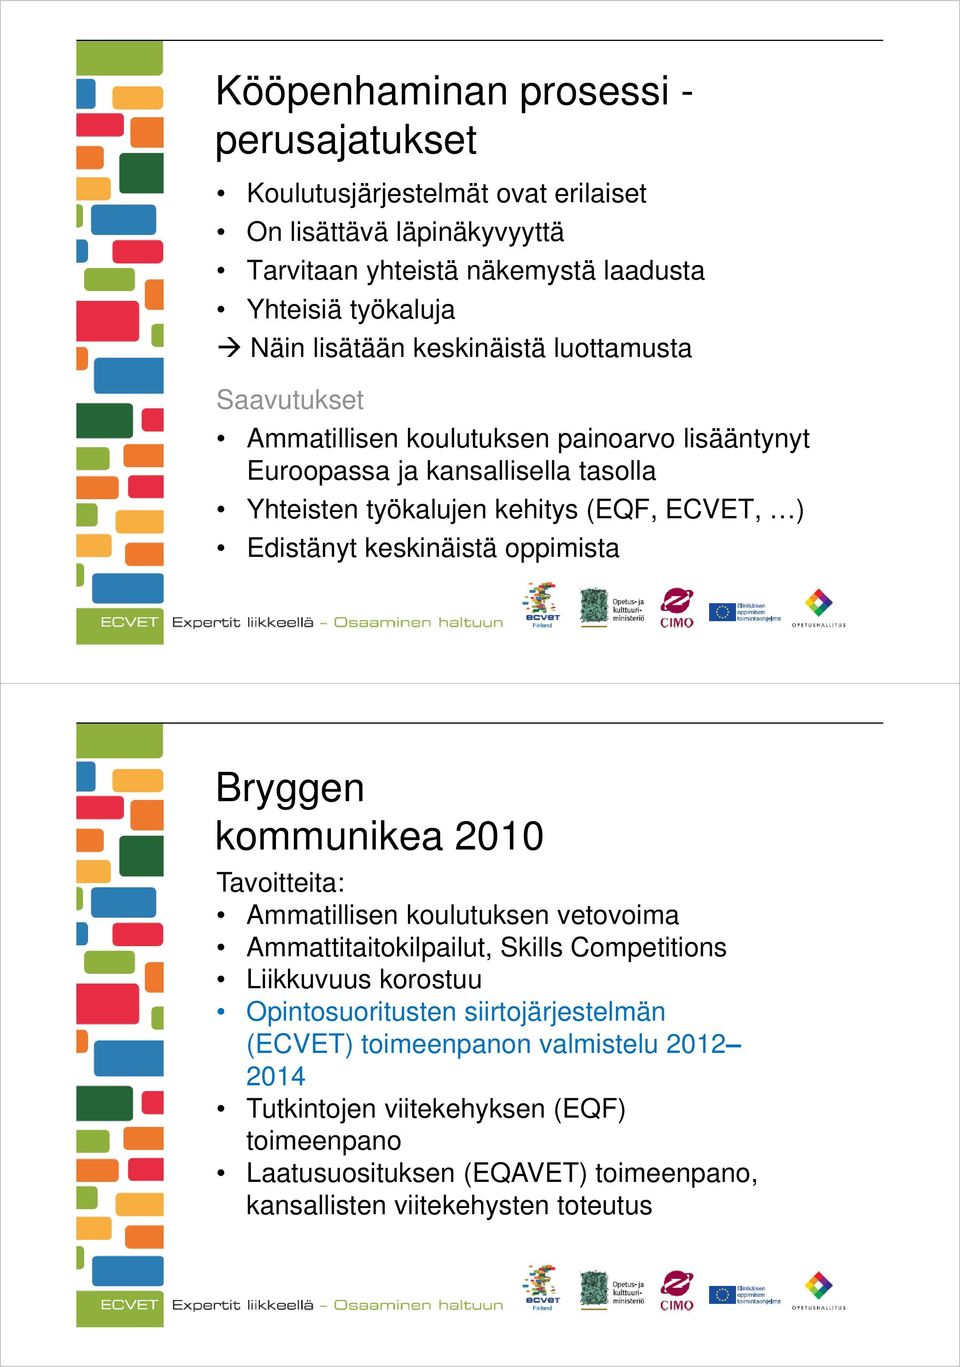 keskinäistä oppimista Bryggen kommunikea 2010 Tavoitteita: Ammatillisen koulutuksen vetovoima Ammattitaitokilpailut, Skills Competitions Liikkuvuus korostuu Opintosuoritusten